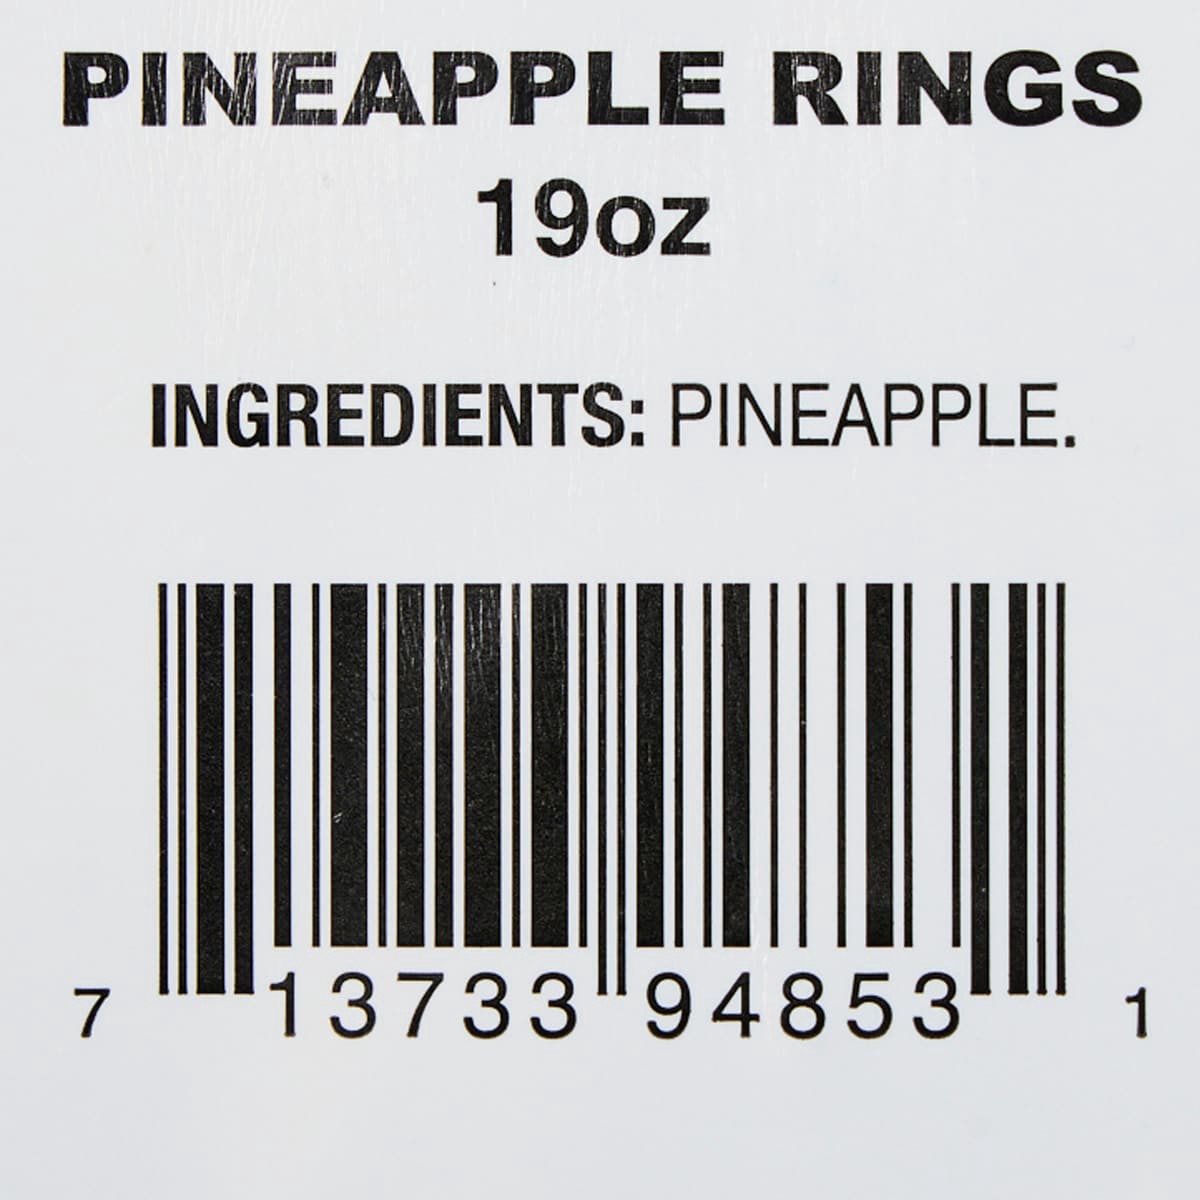 slide 13 of 17, Fresh from Meijer Sliced Pineapple Rings, 19 oz